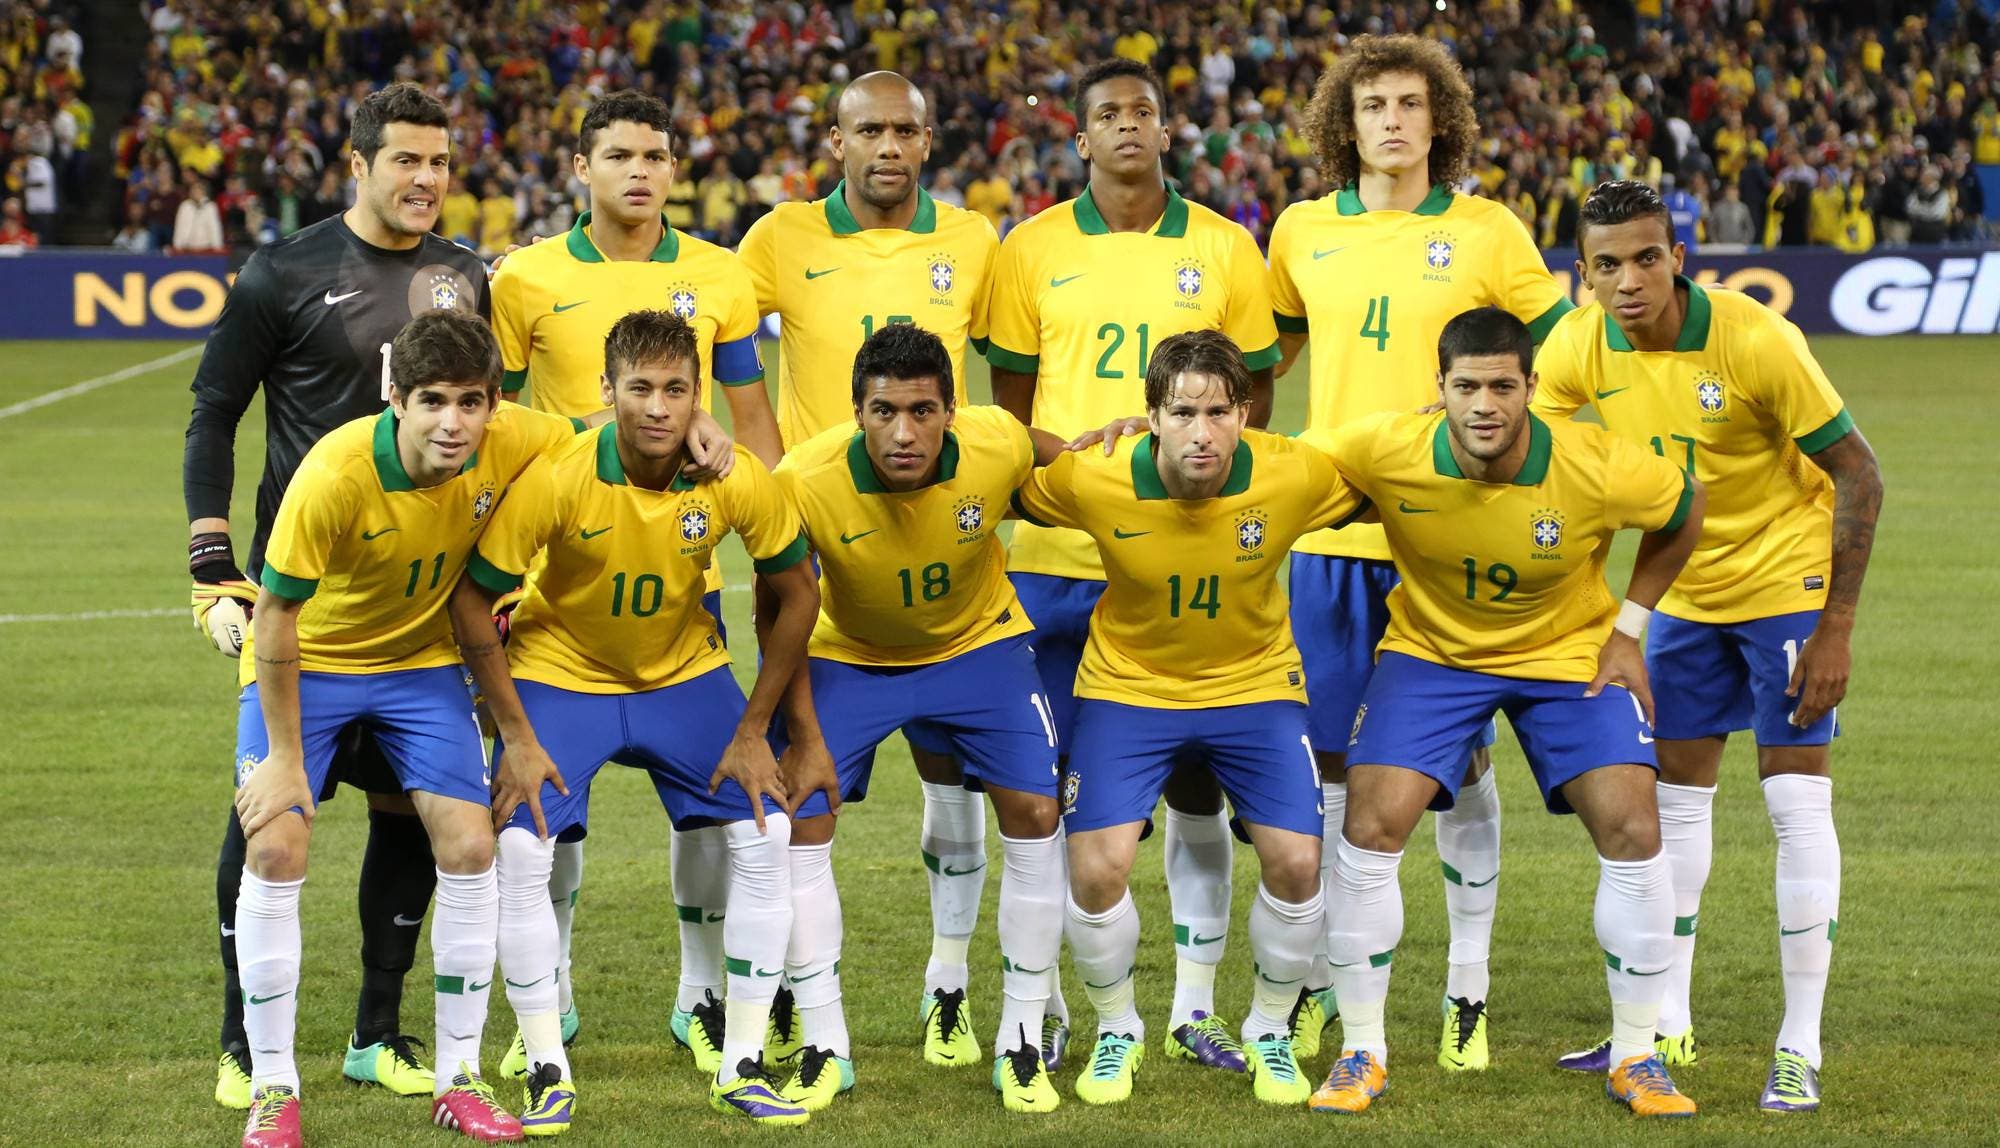 Nadie quiere la camiseta de Brasil tras el Mineirazo